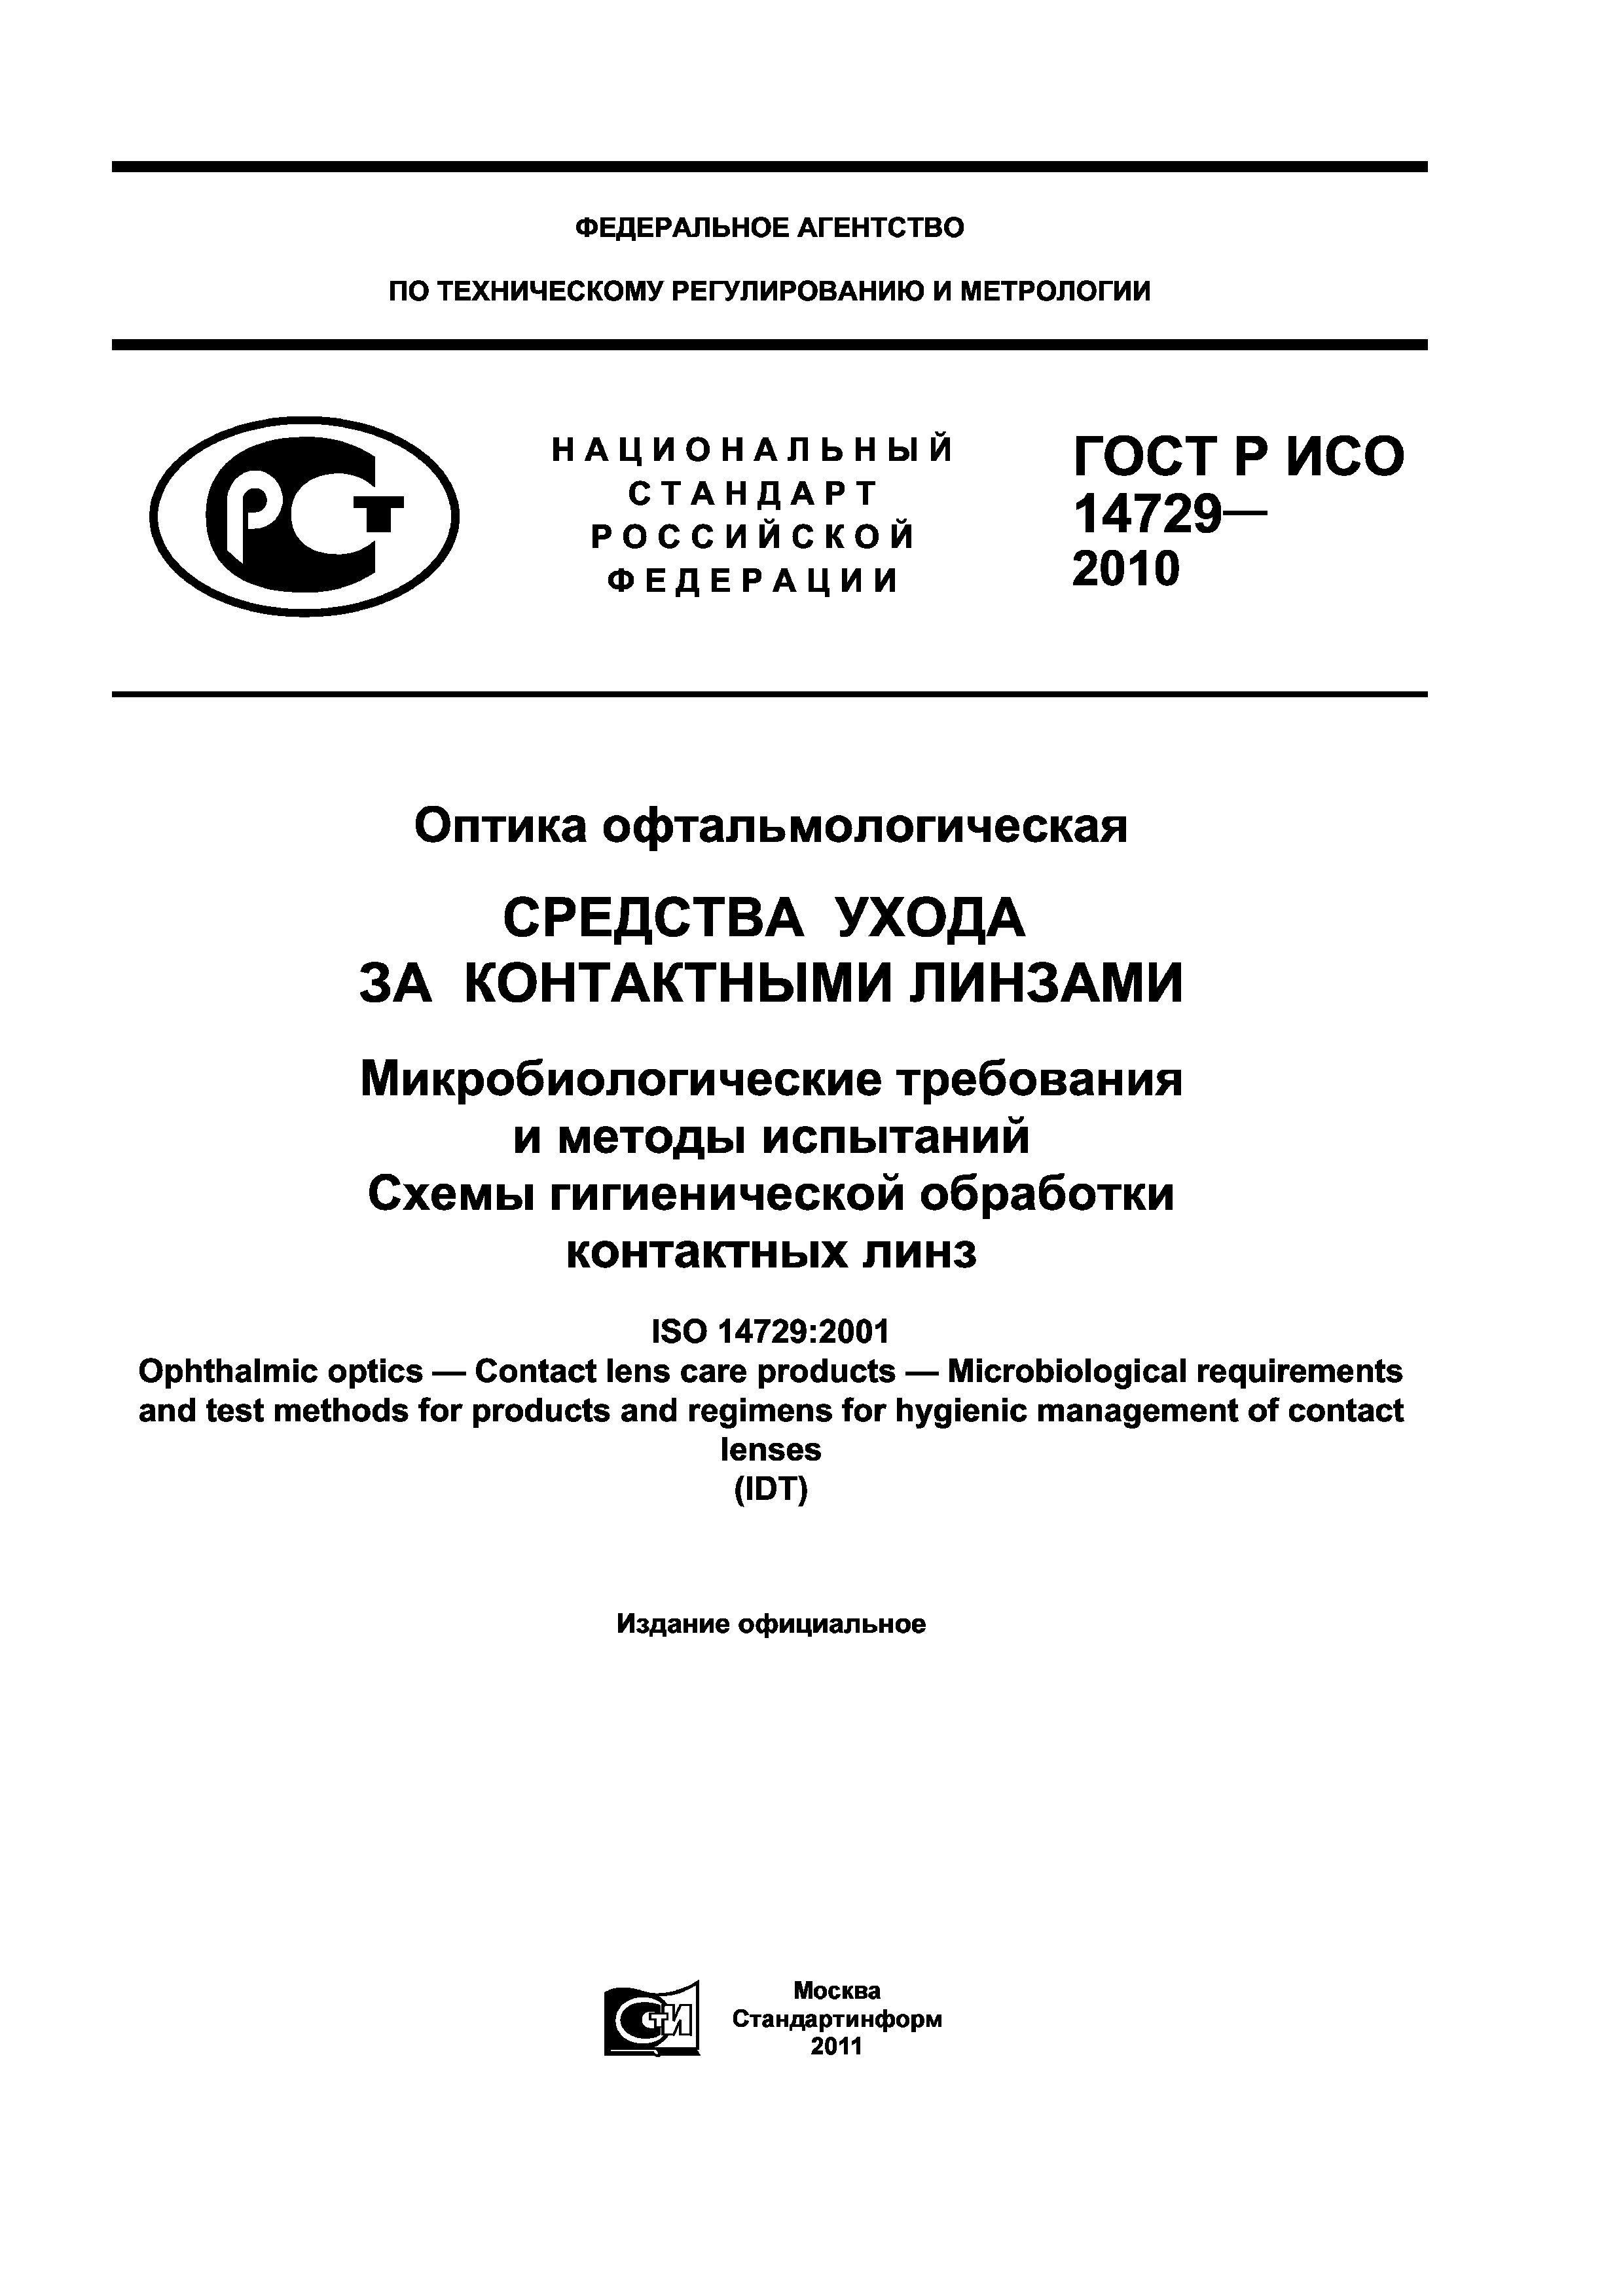 ГОСТ Р ИСО 14729-2010